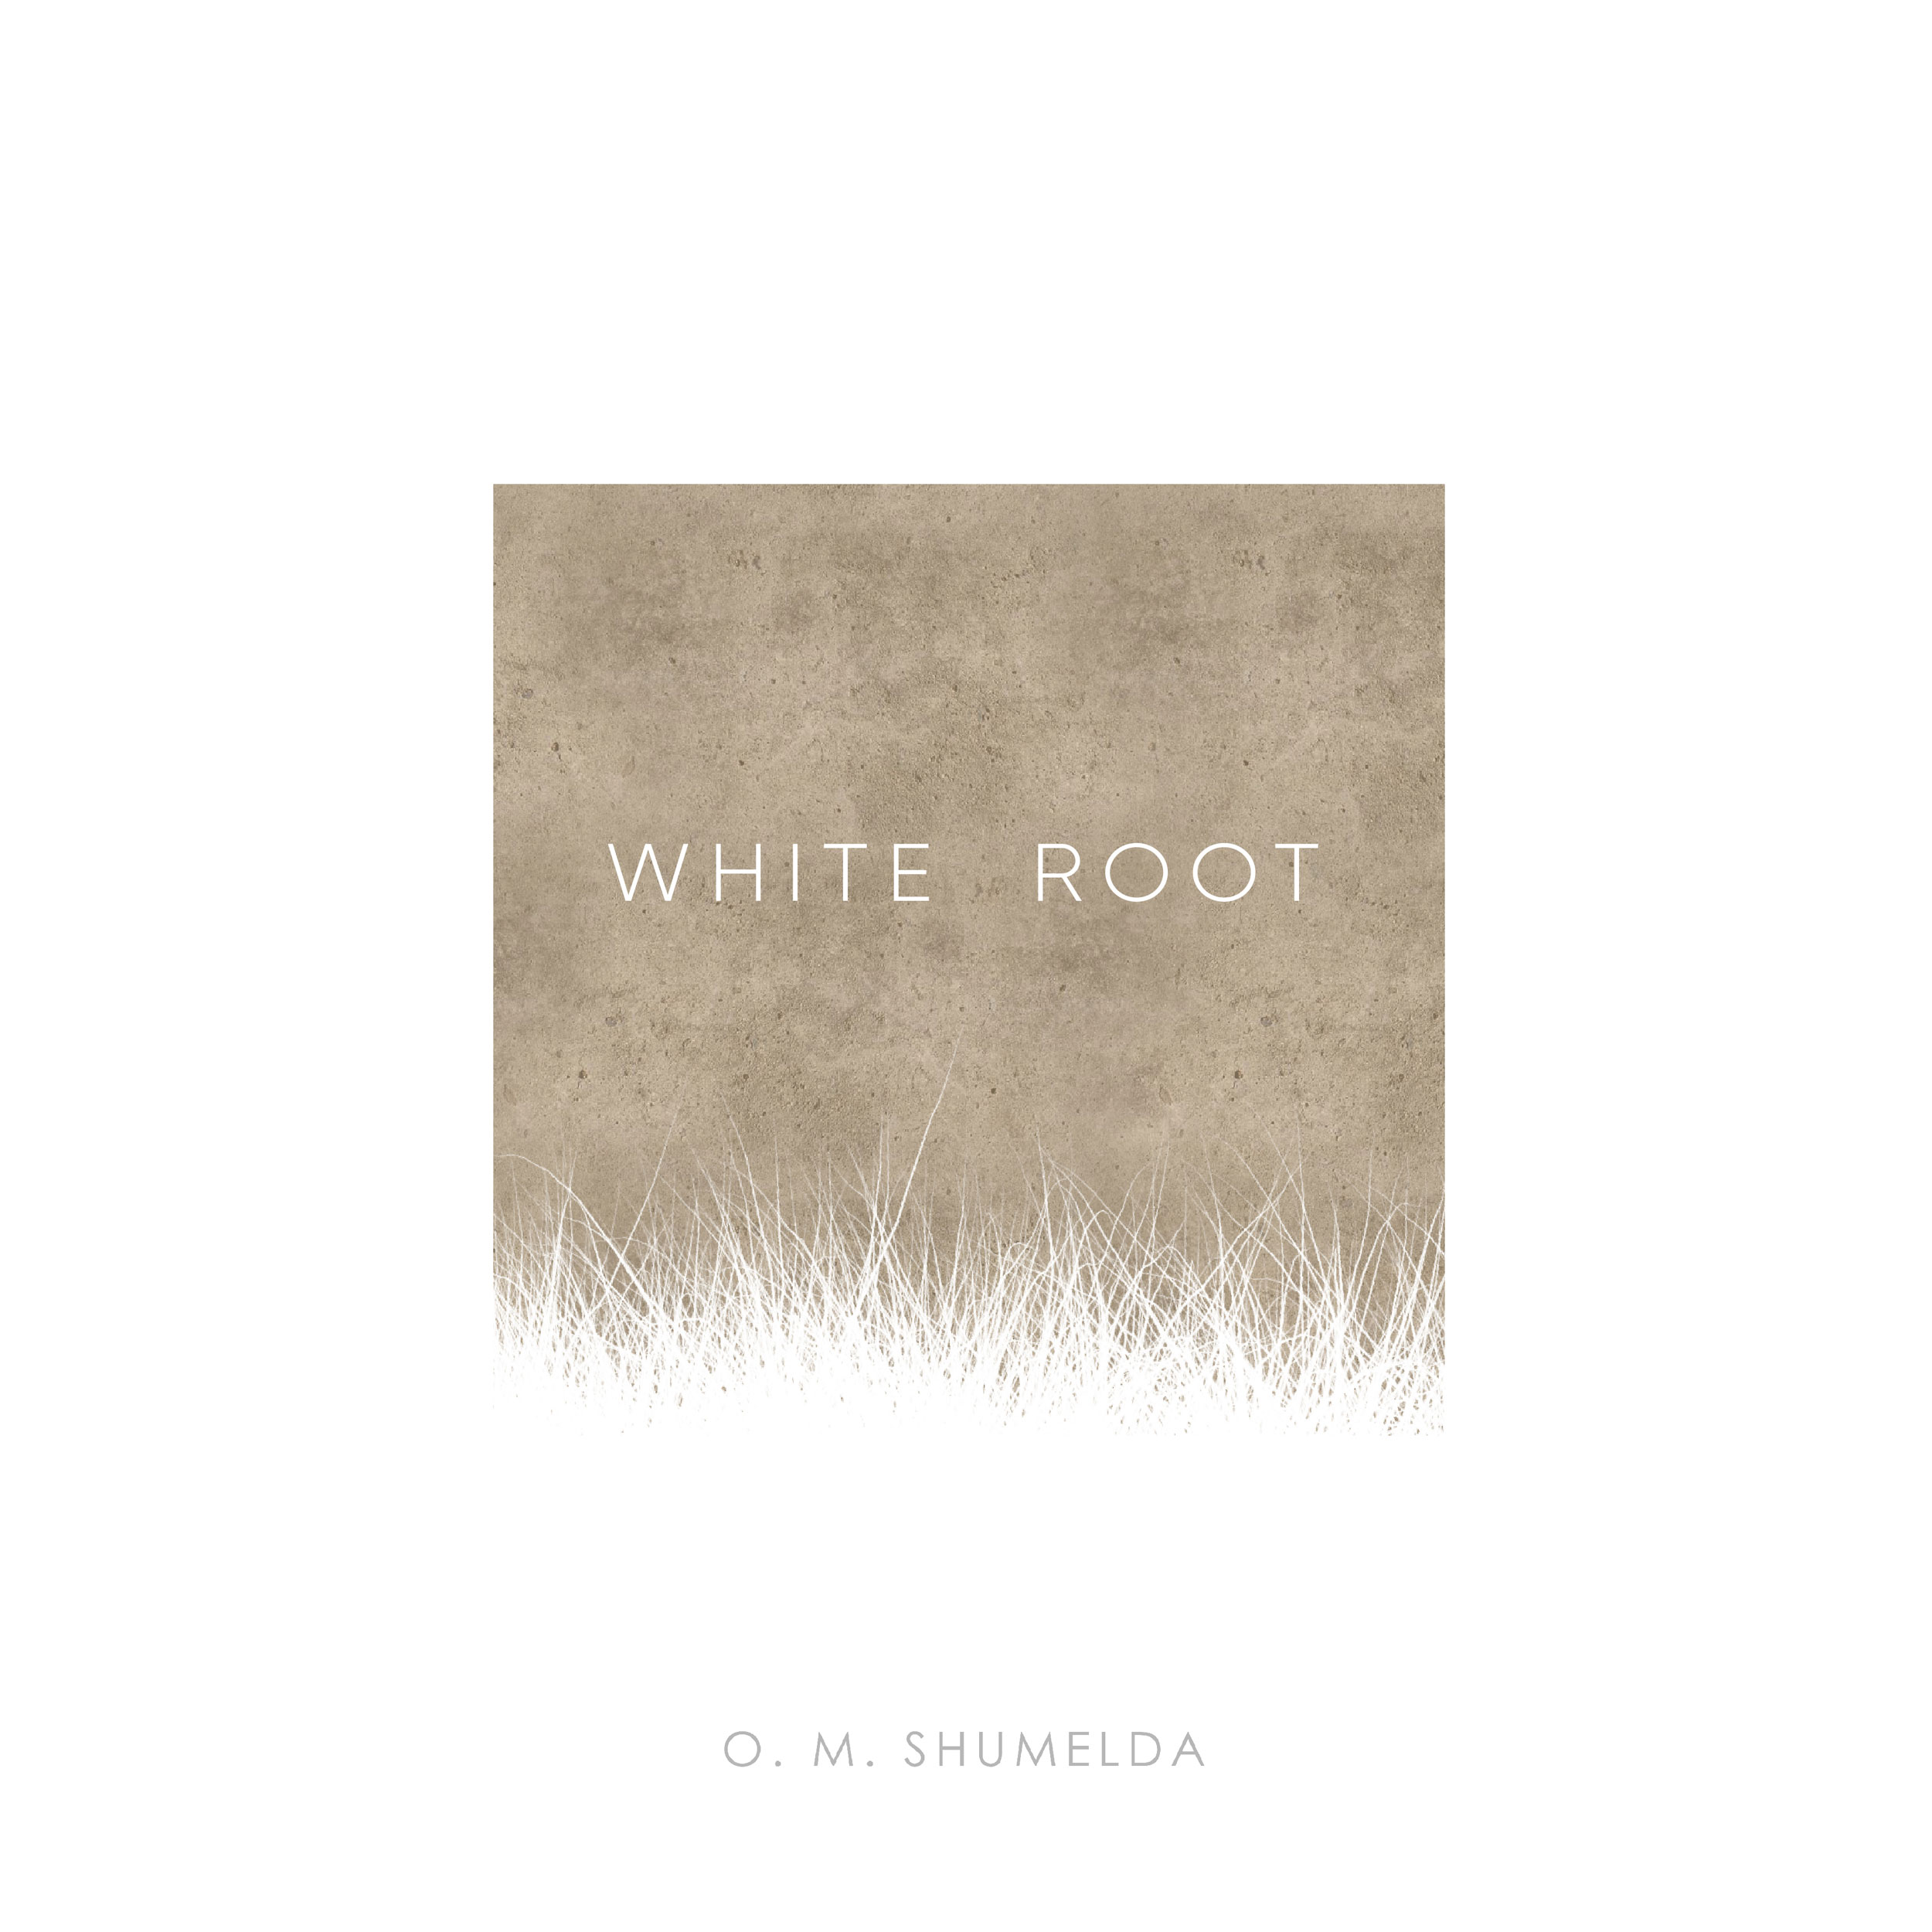 White root